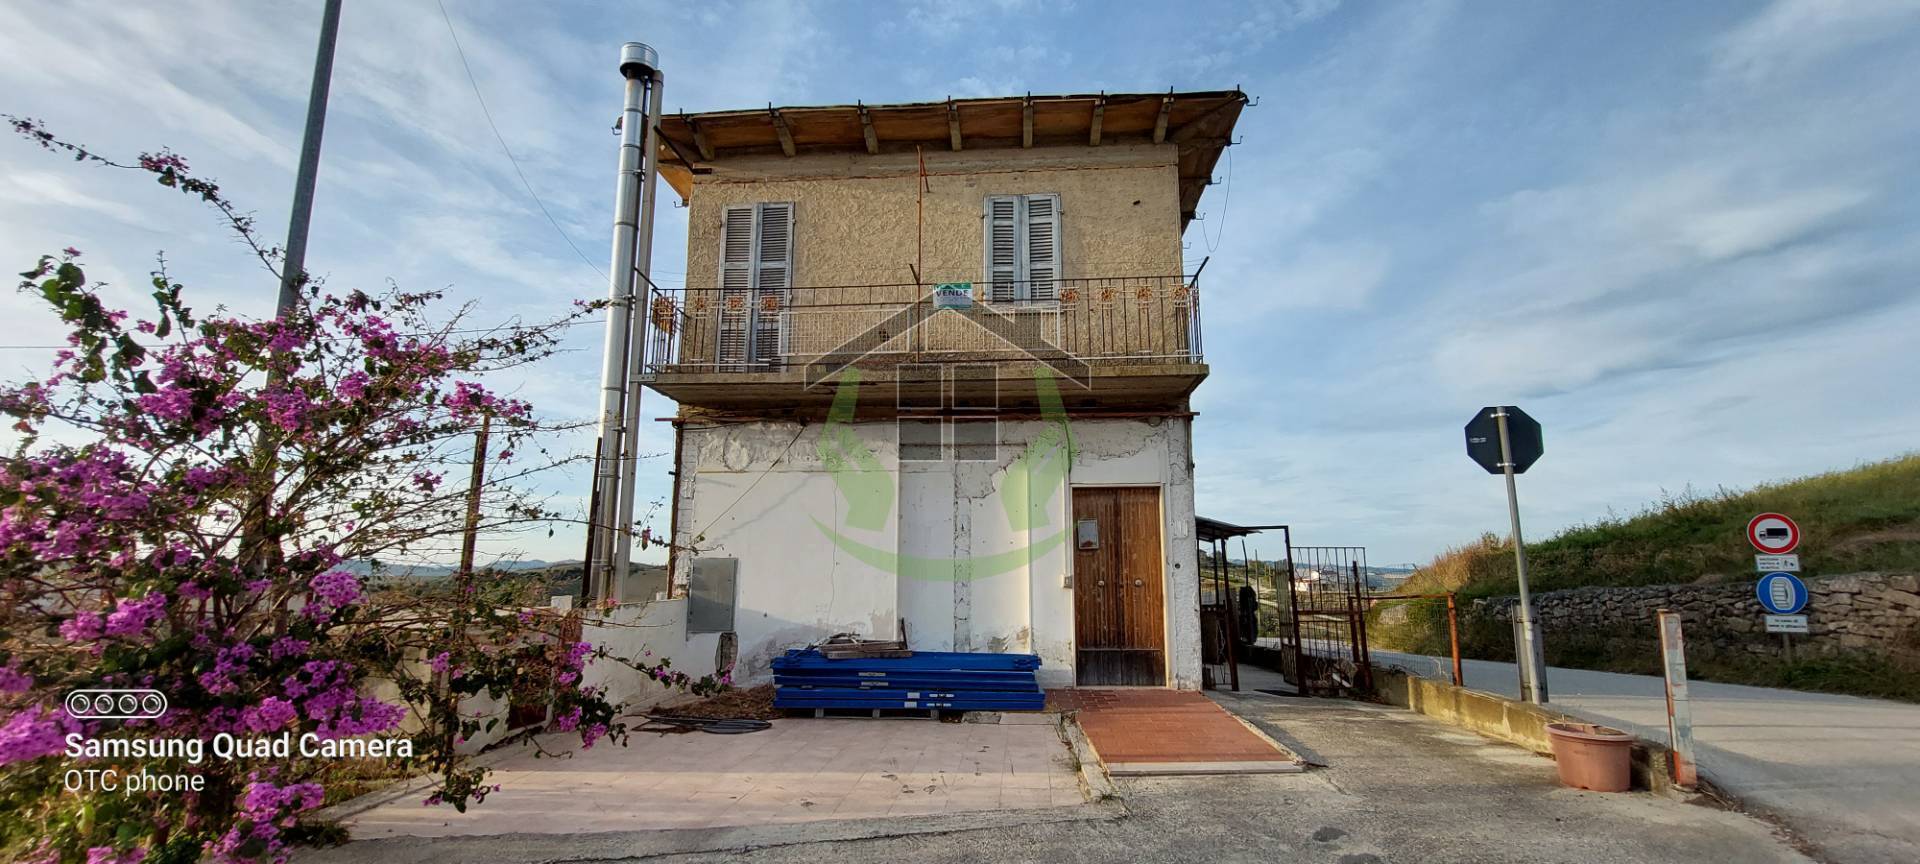 Appartamento in vendita a Ripatransone, 5 locali, prezzo € 80.000 | PortaleAgenzieImmobiliari.it